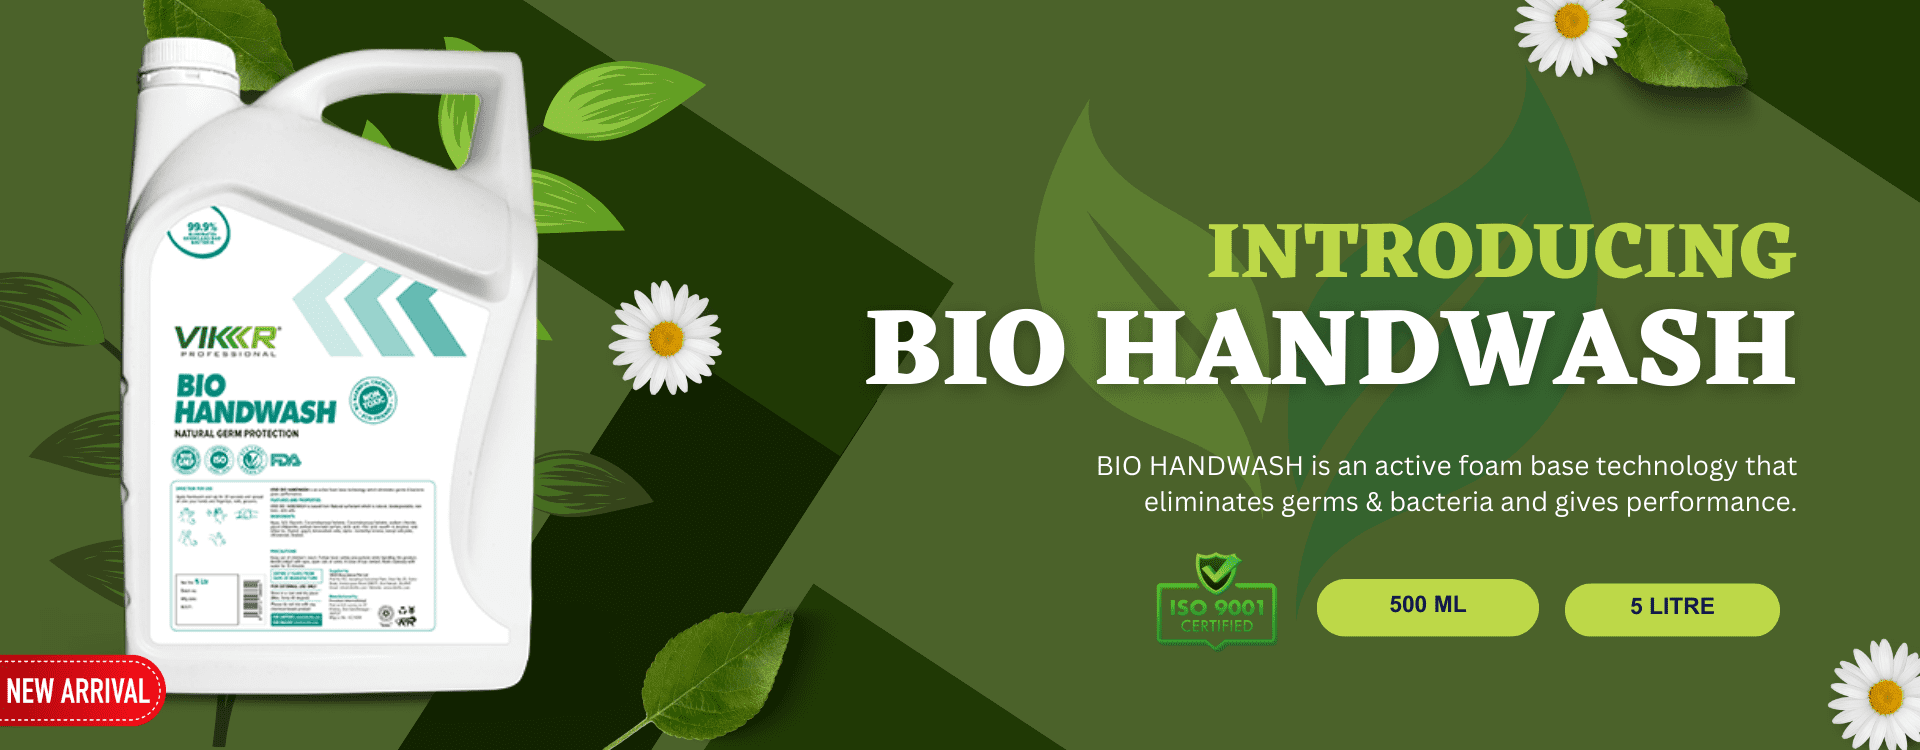 bio-handwash1